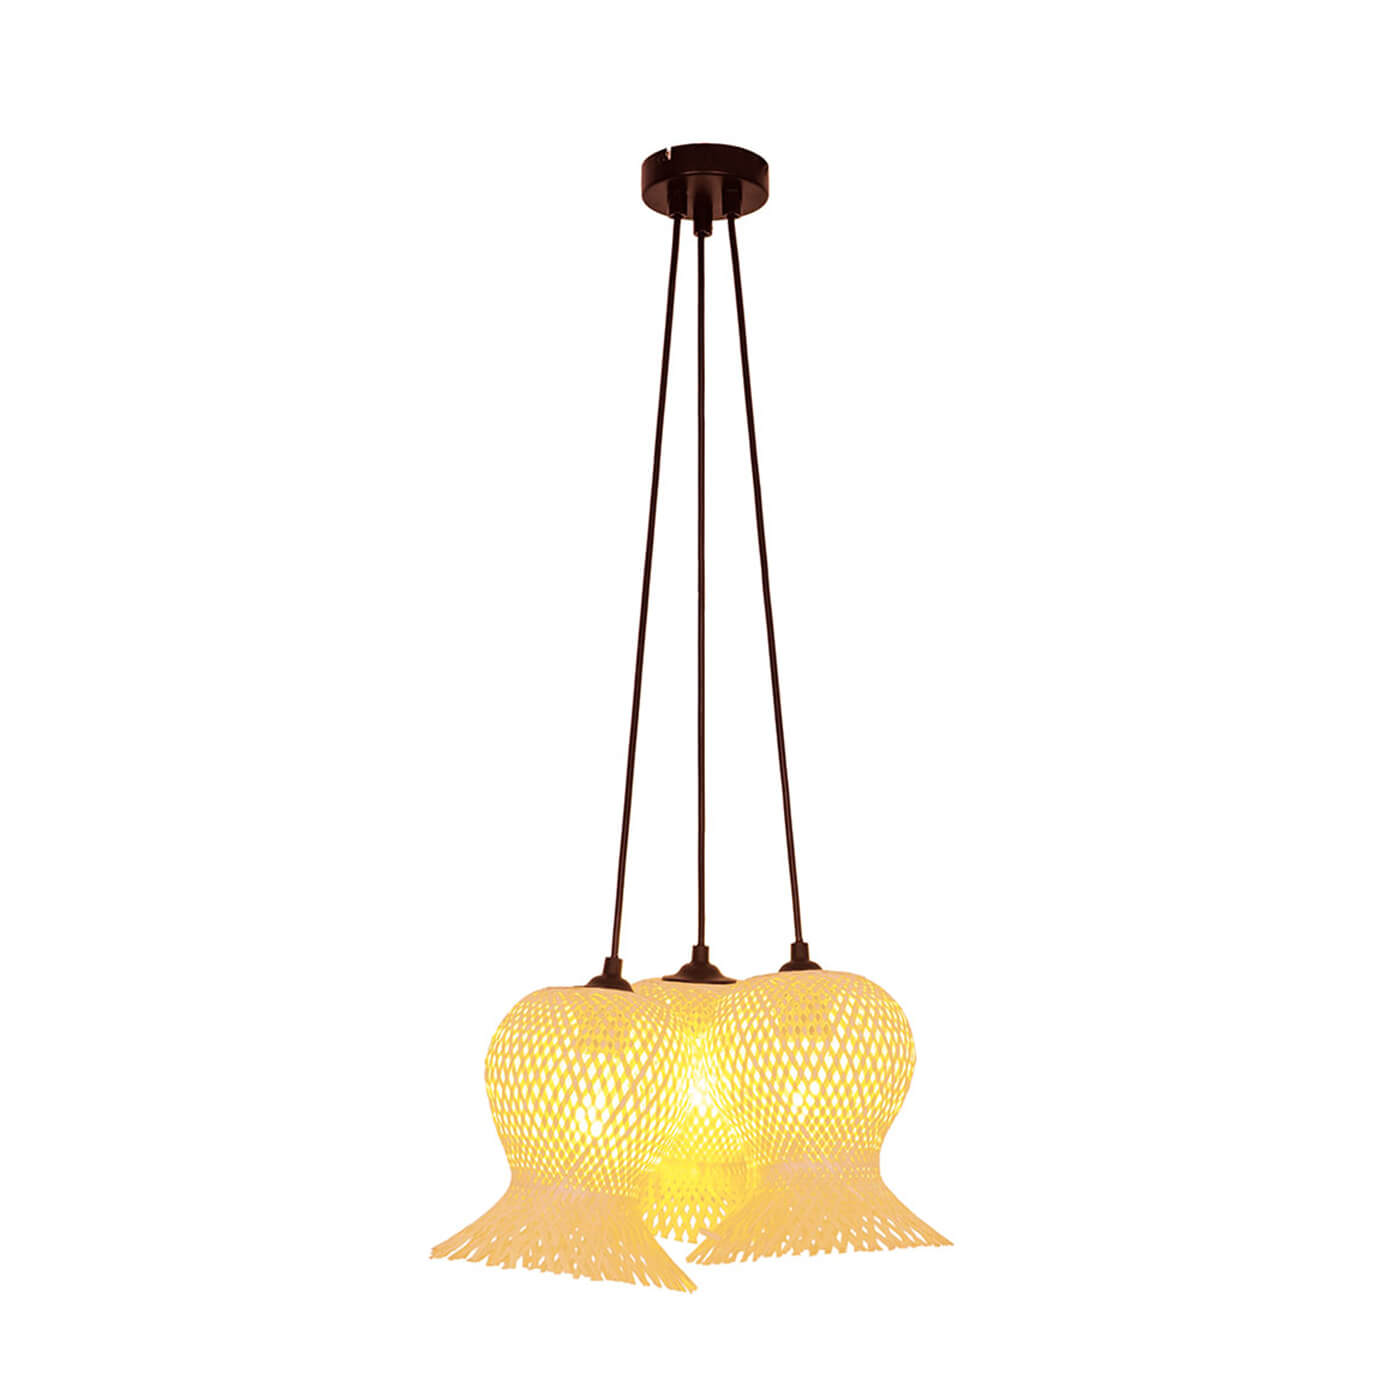 Cauti o lampa suspendata natur CONTESSA S3 din ratan, design modern, pentru living, dining sau dormitor din colectia de lustre si candelabre Domicilio?